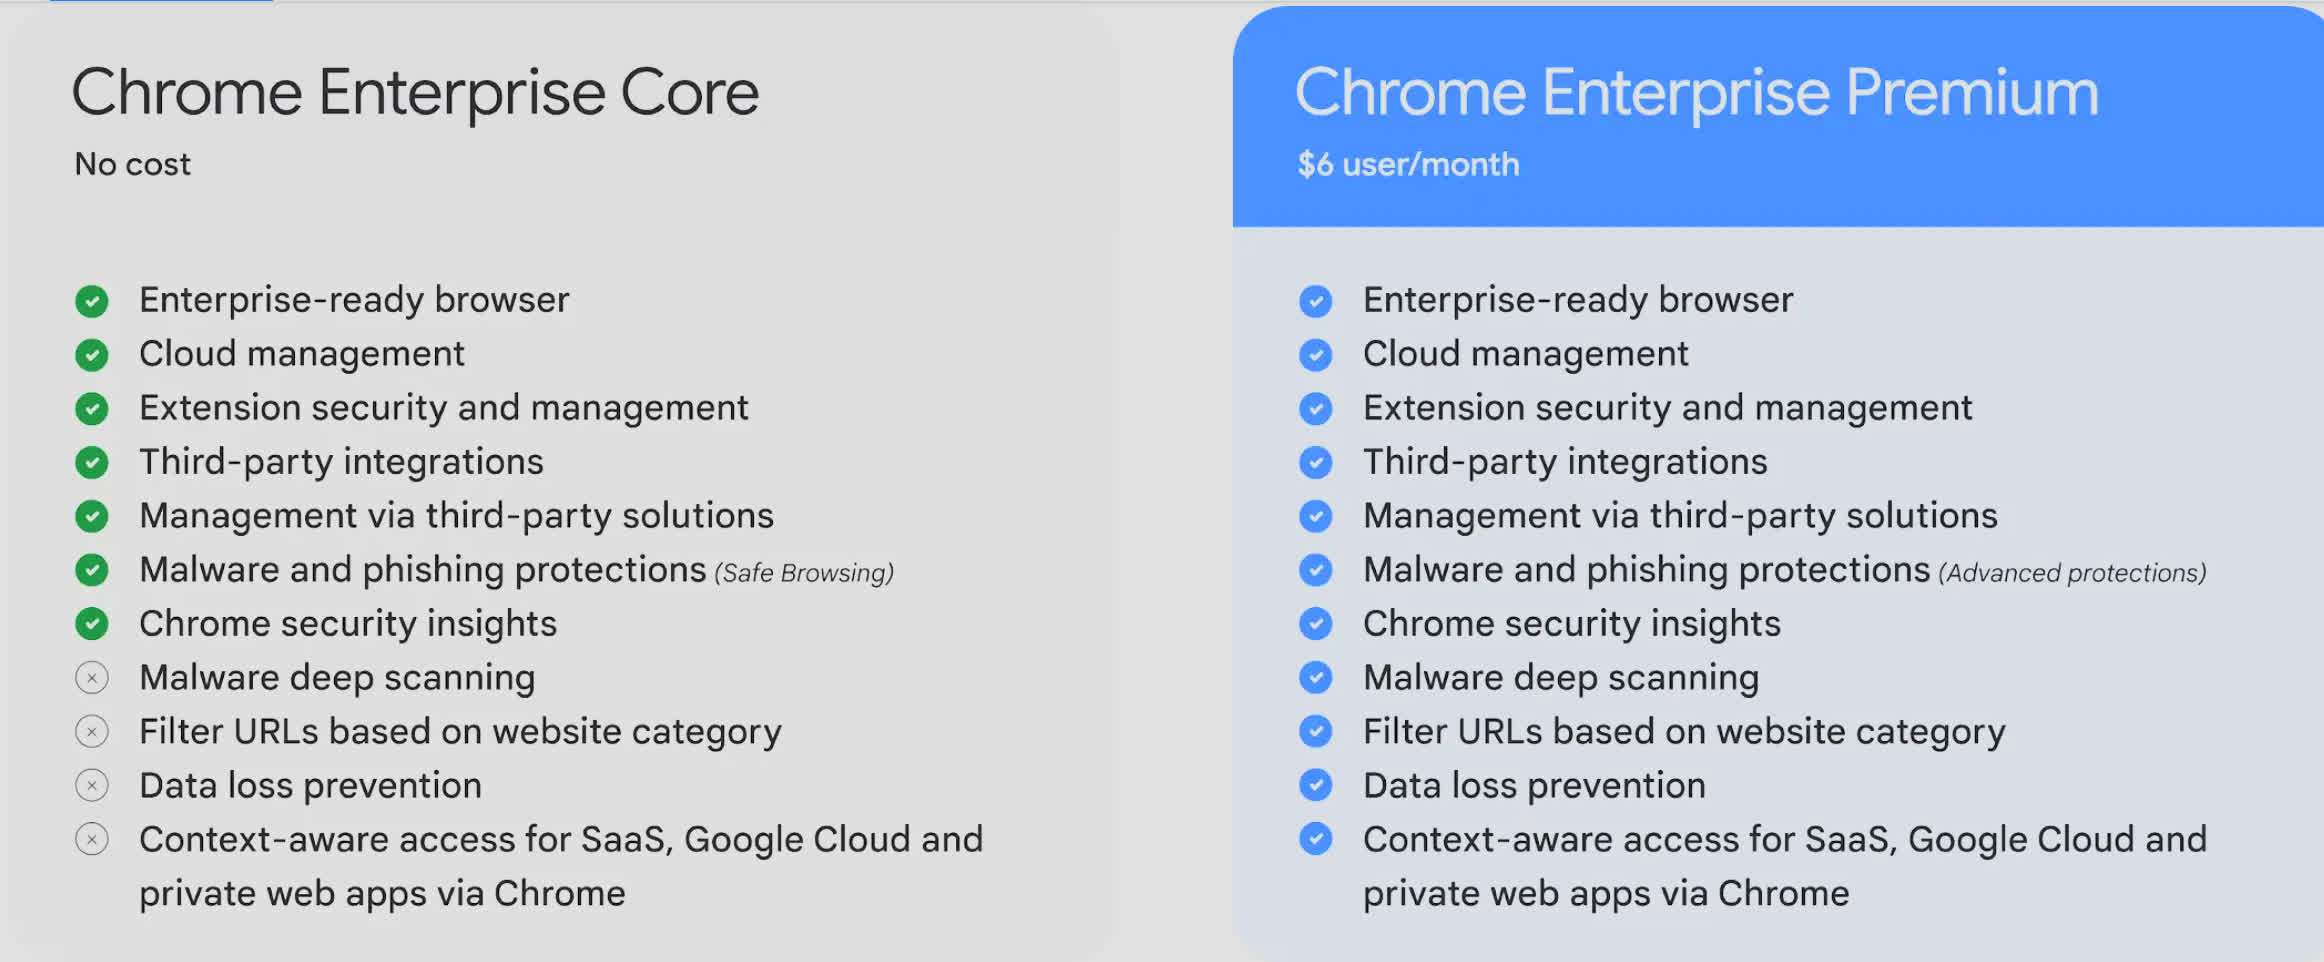 谷歌推出付费Chrome Enterprise Premium 提供更高安全防护等级 